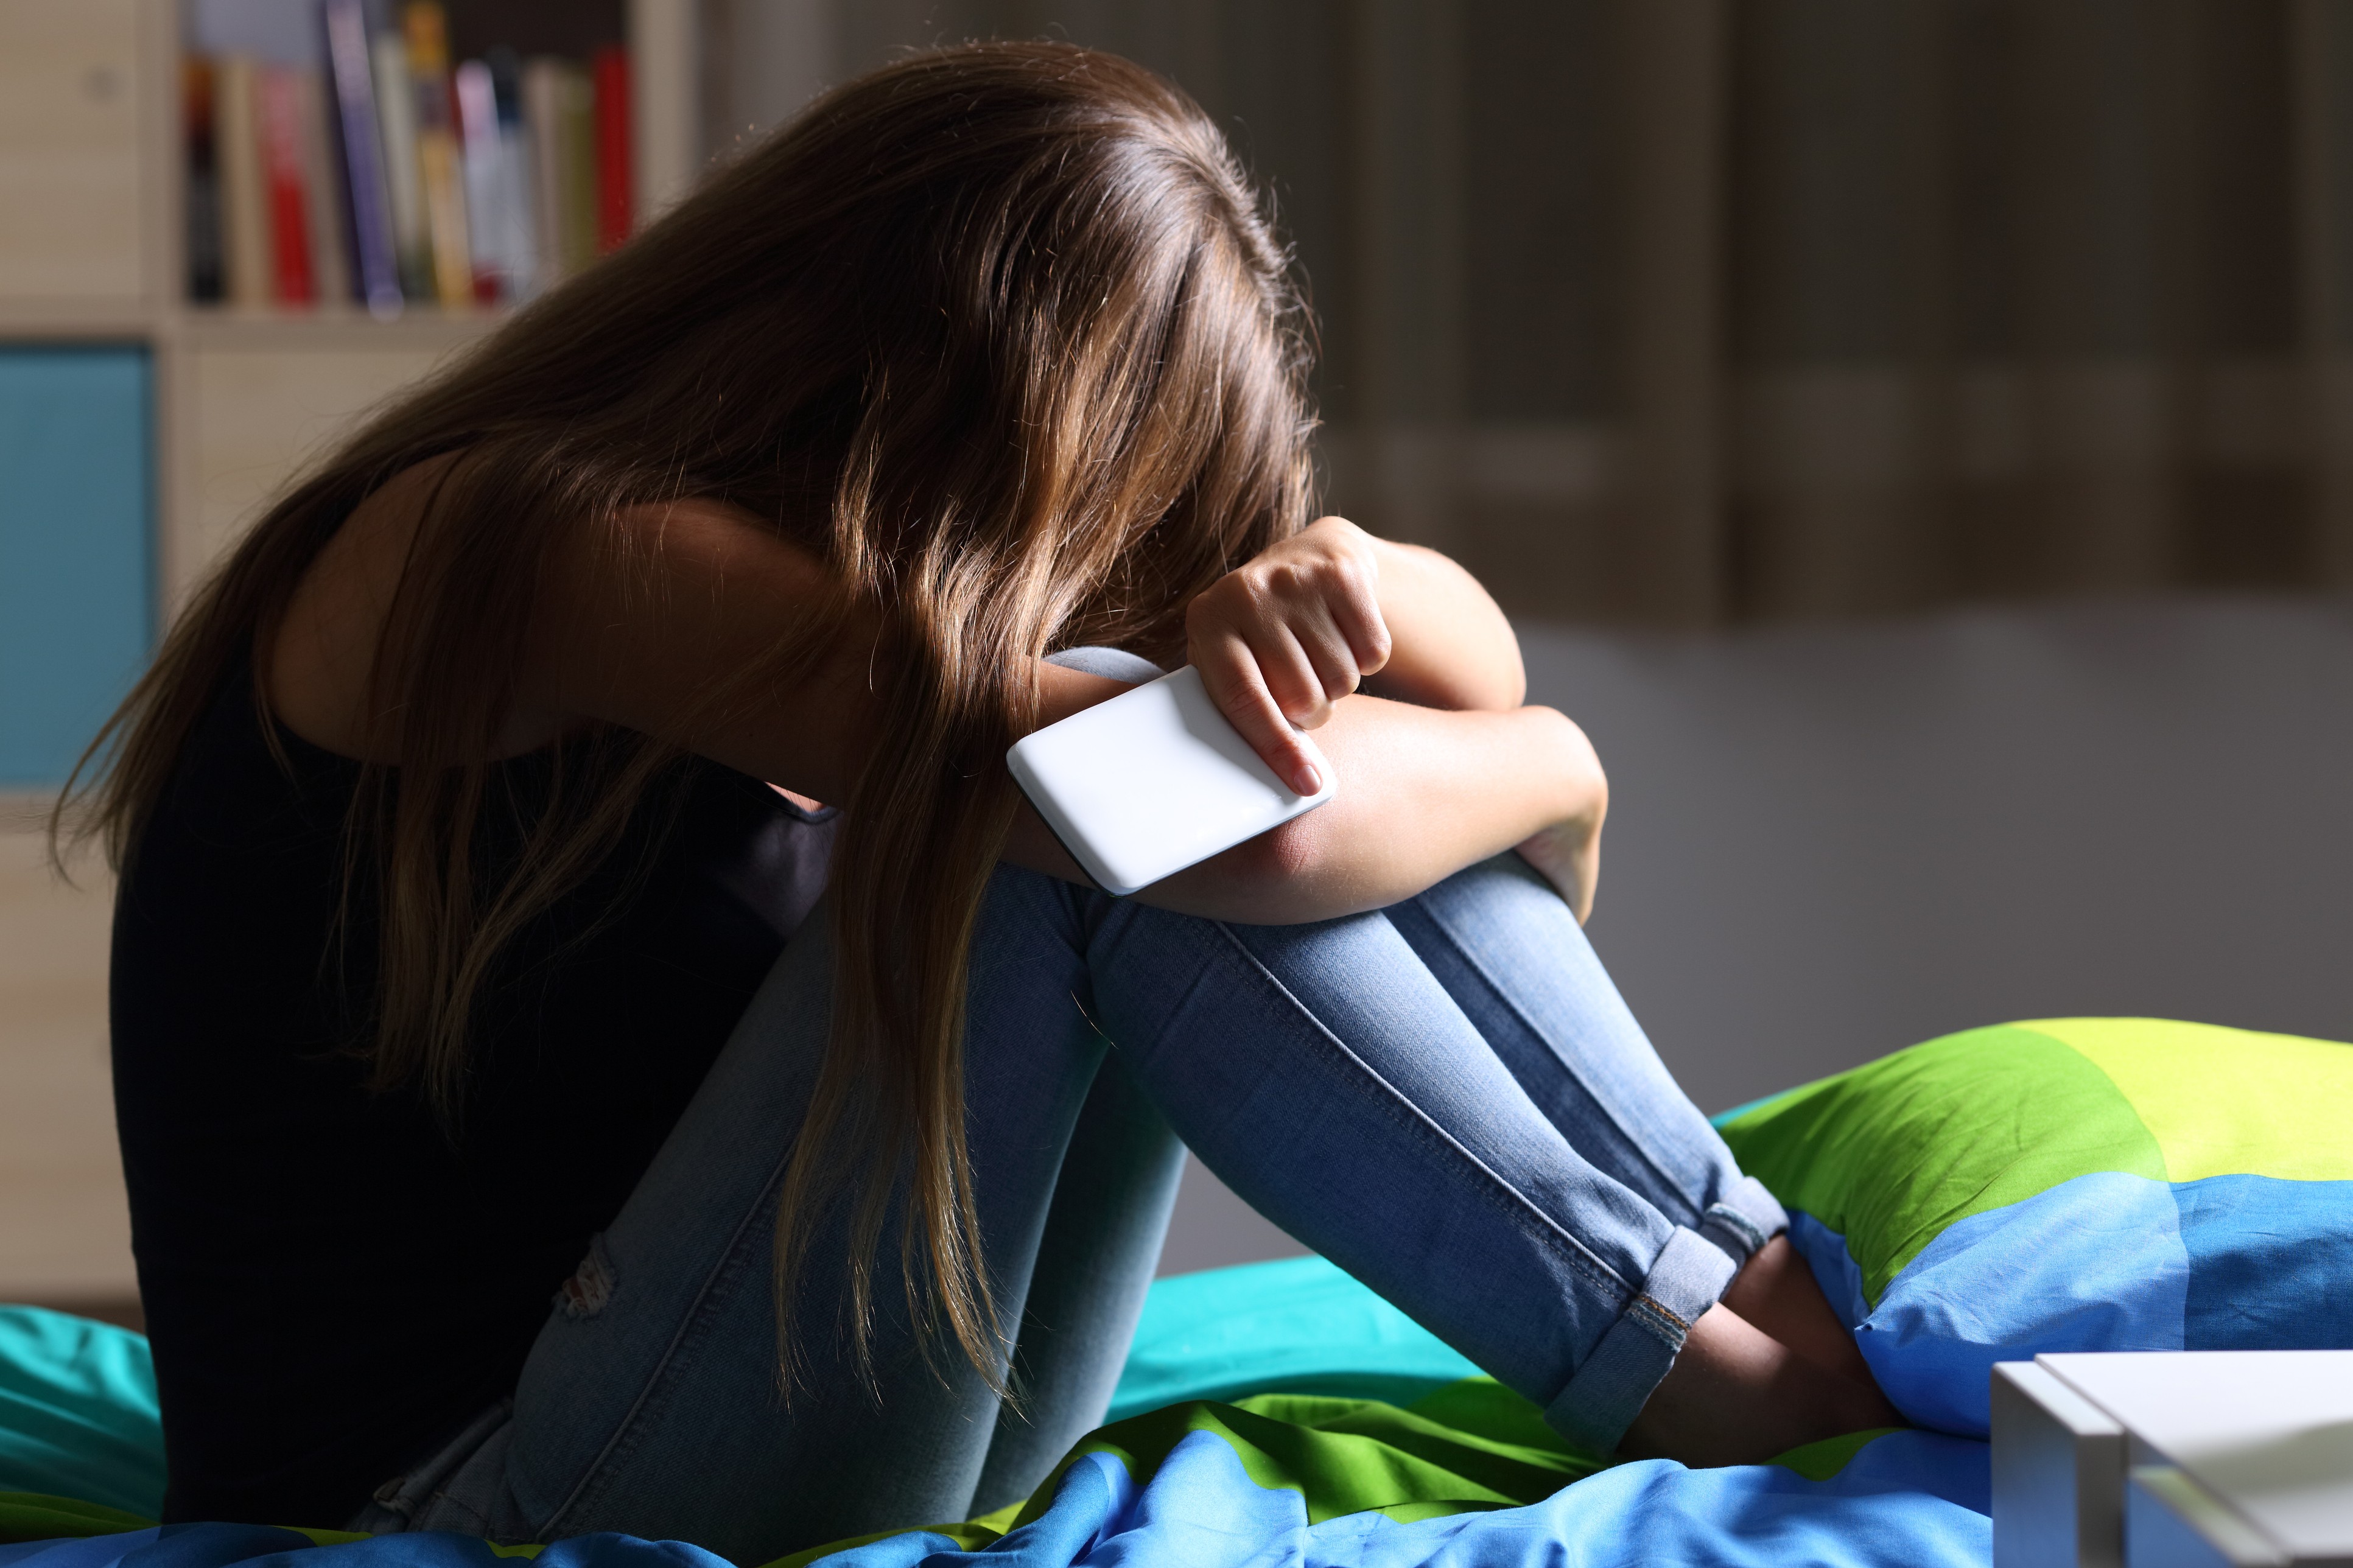 Jovens estão desenvolvendo mais depressão do que há 10 anos, de acordo com pesquisa (Foto: Thinkstock)